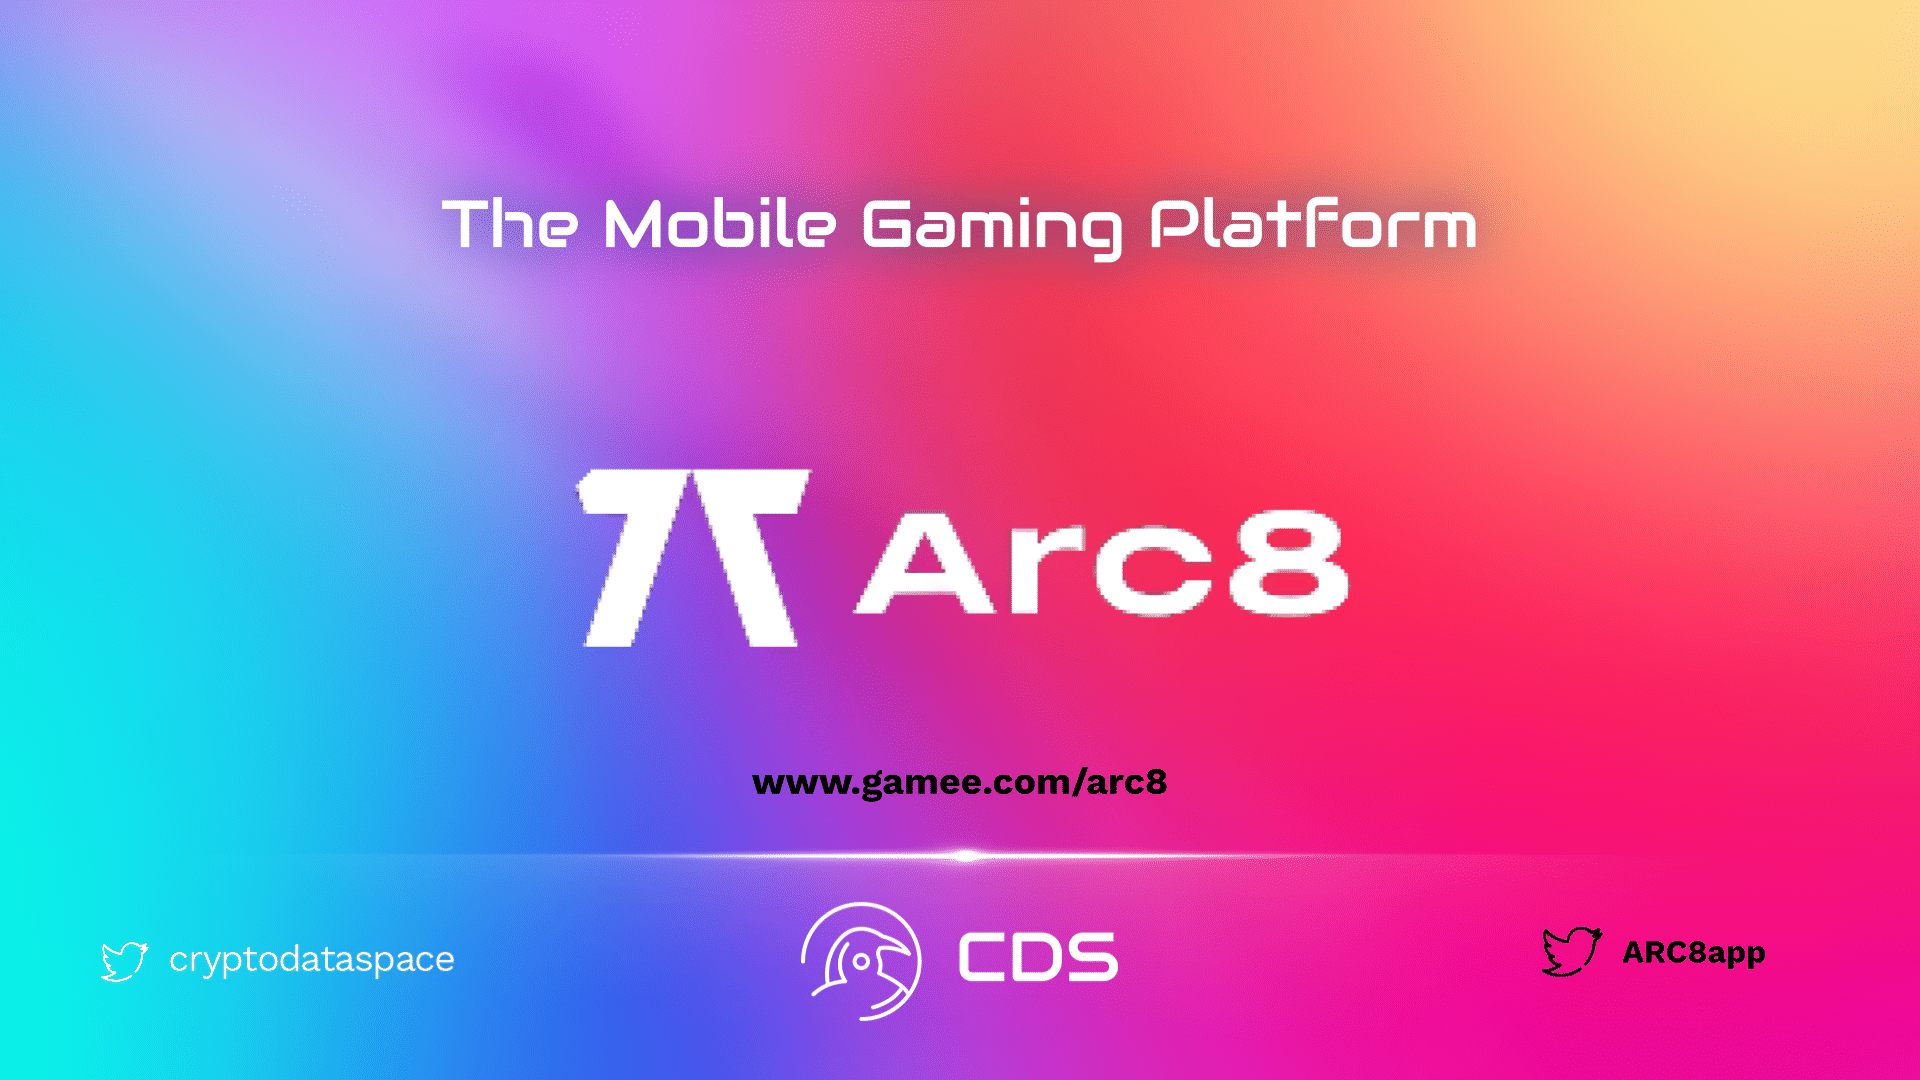 arc8 mobile gaming platform